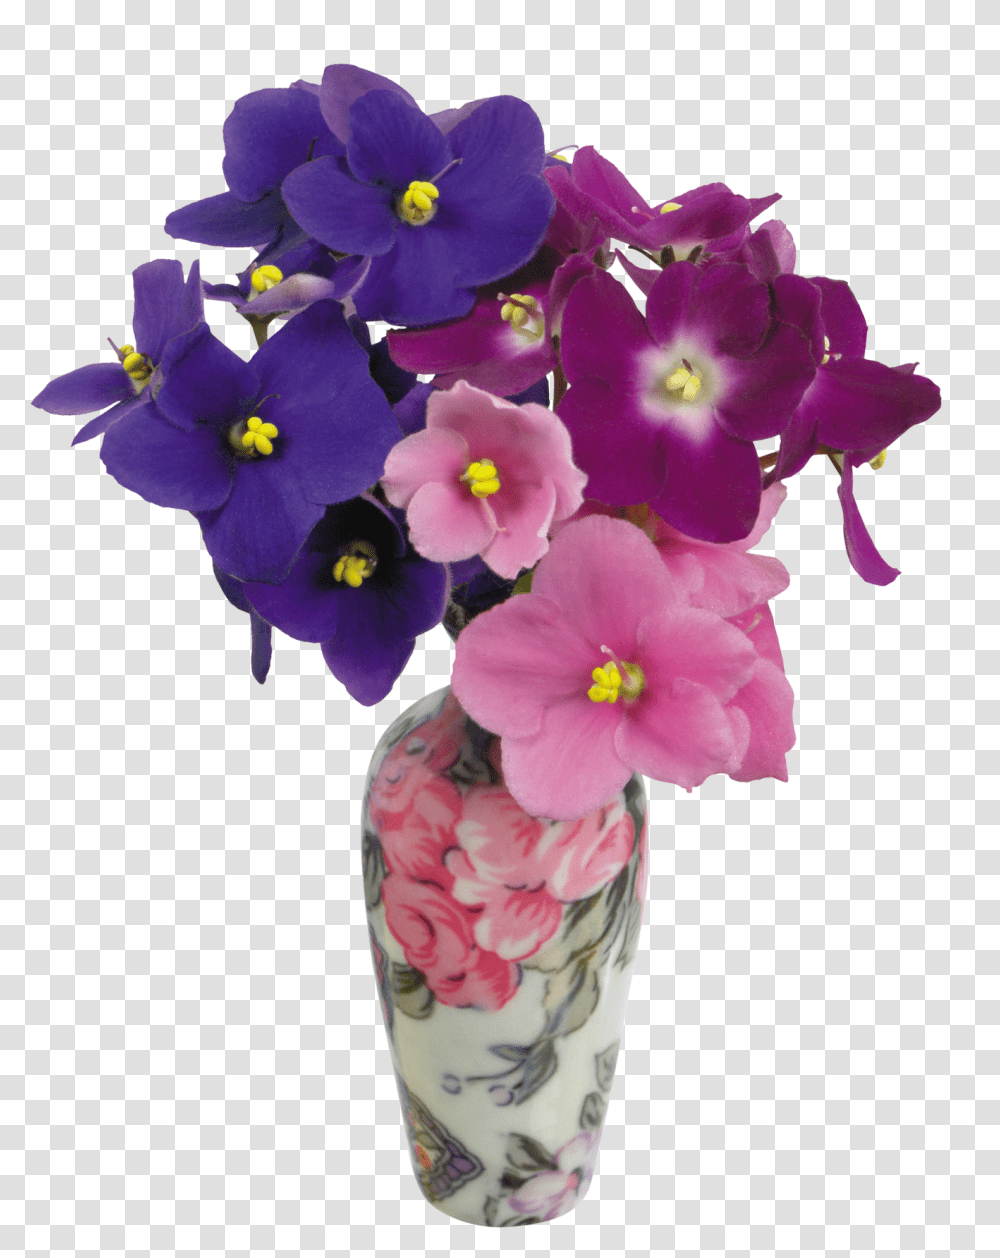 Vase Image Flower In Vase, Plant, Geranium, Blossom, Flower Arrangement Transparent Png